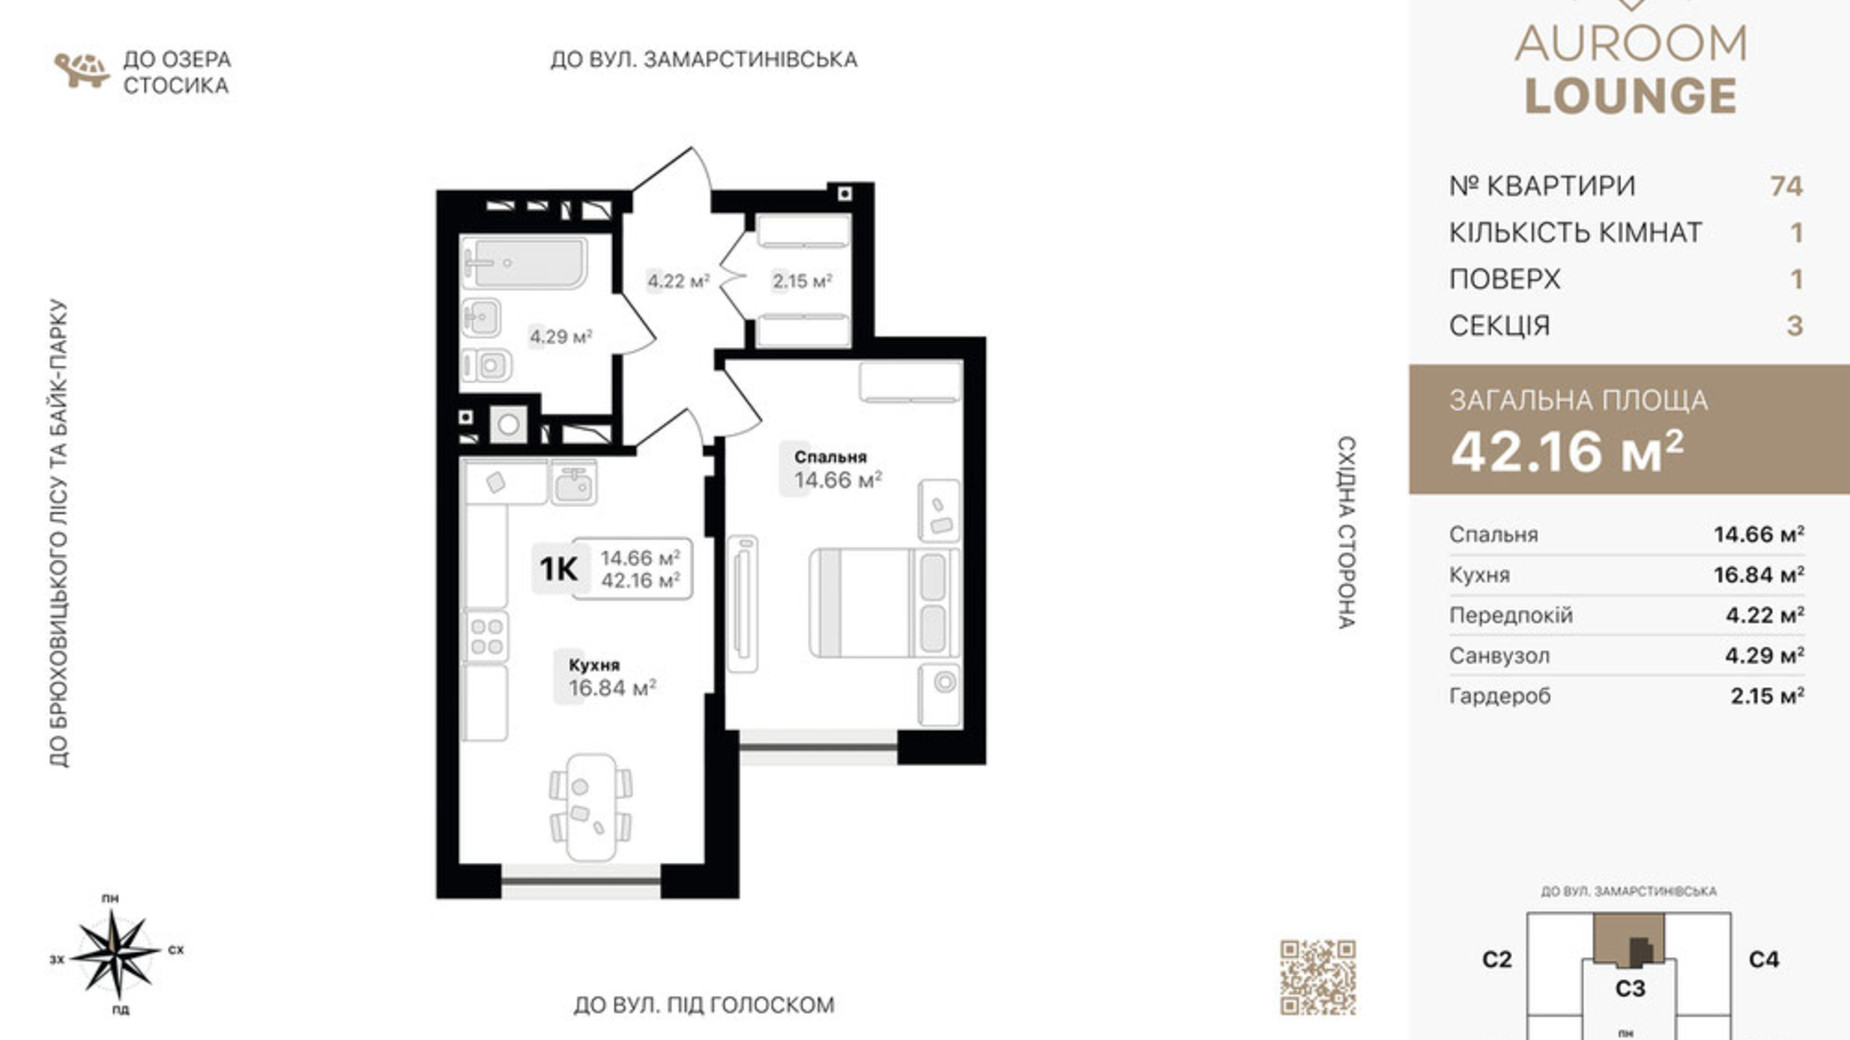 Планування 1-кімнатної квартири в ЖК Auroom Lounge 42.16 м², фото 721105